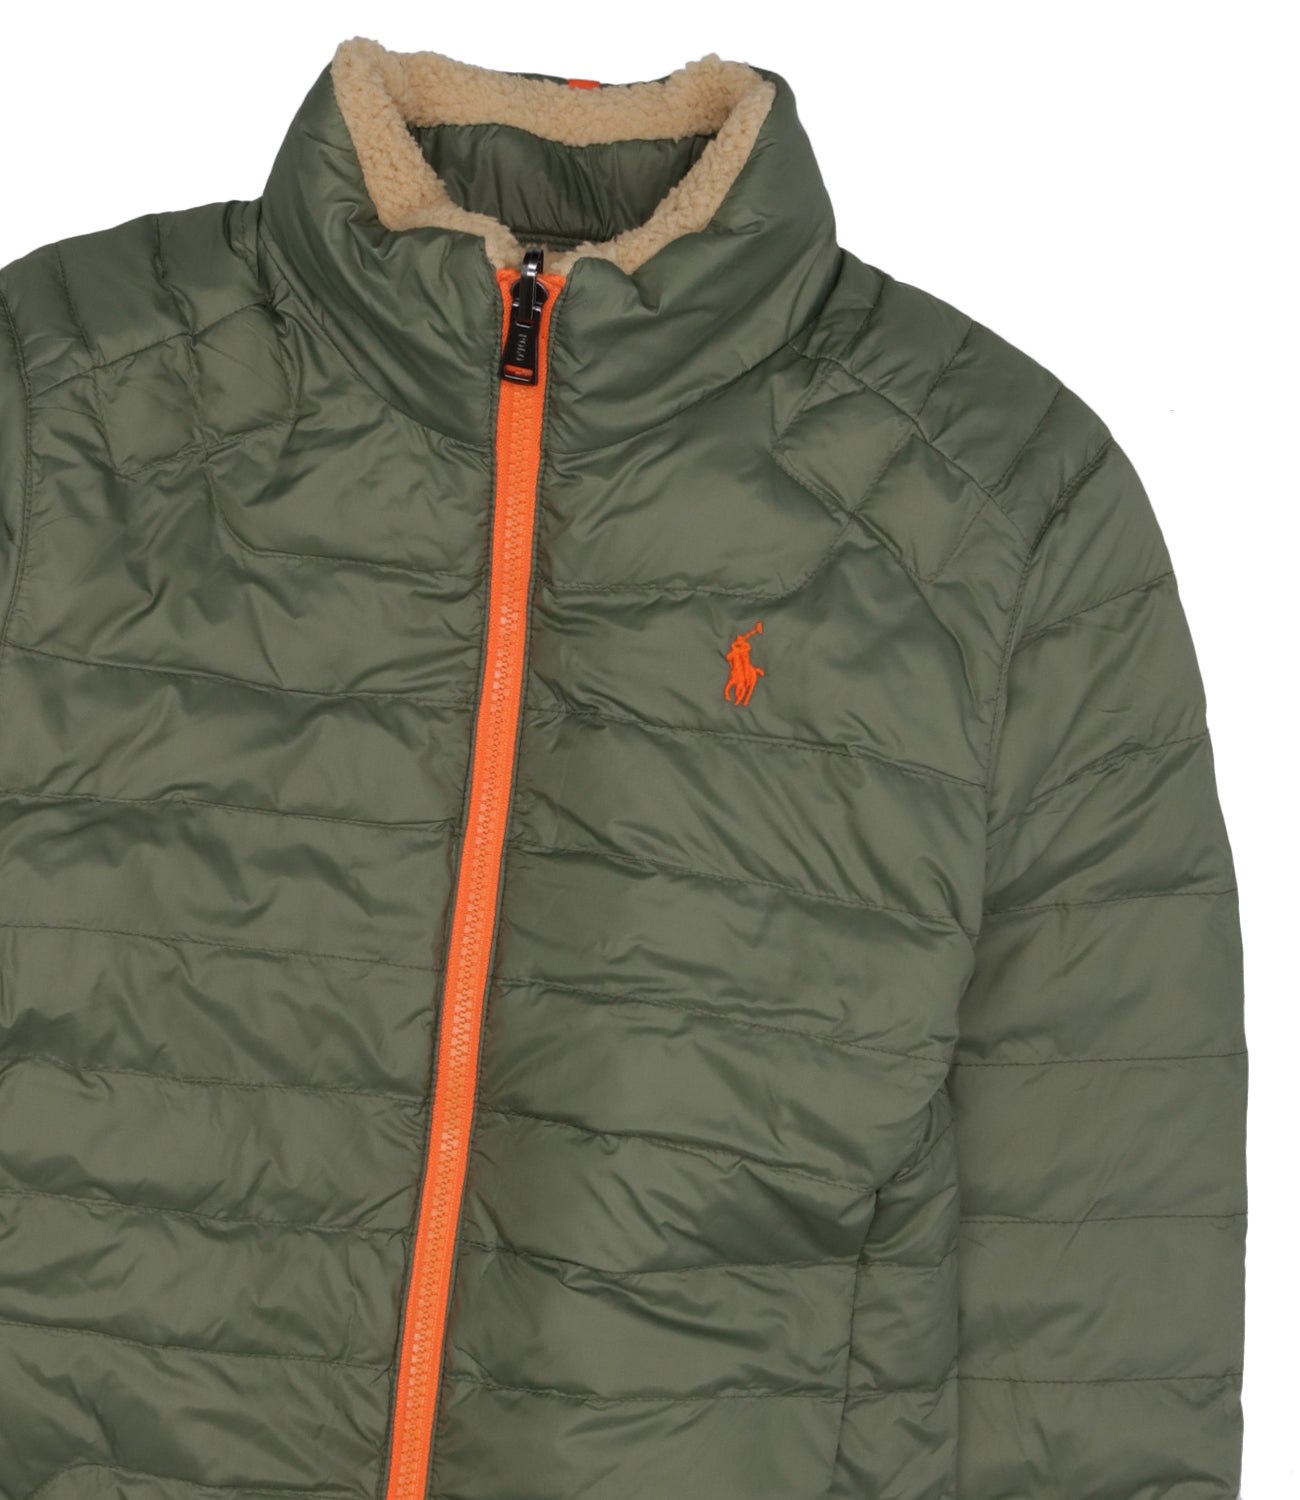 Ralph Lauren Childrenswear | Beige and Green Jacket